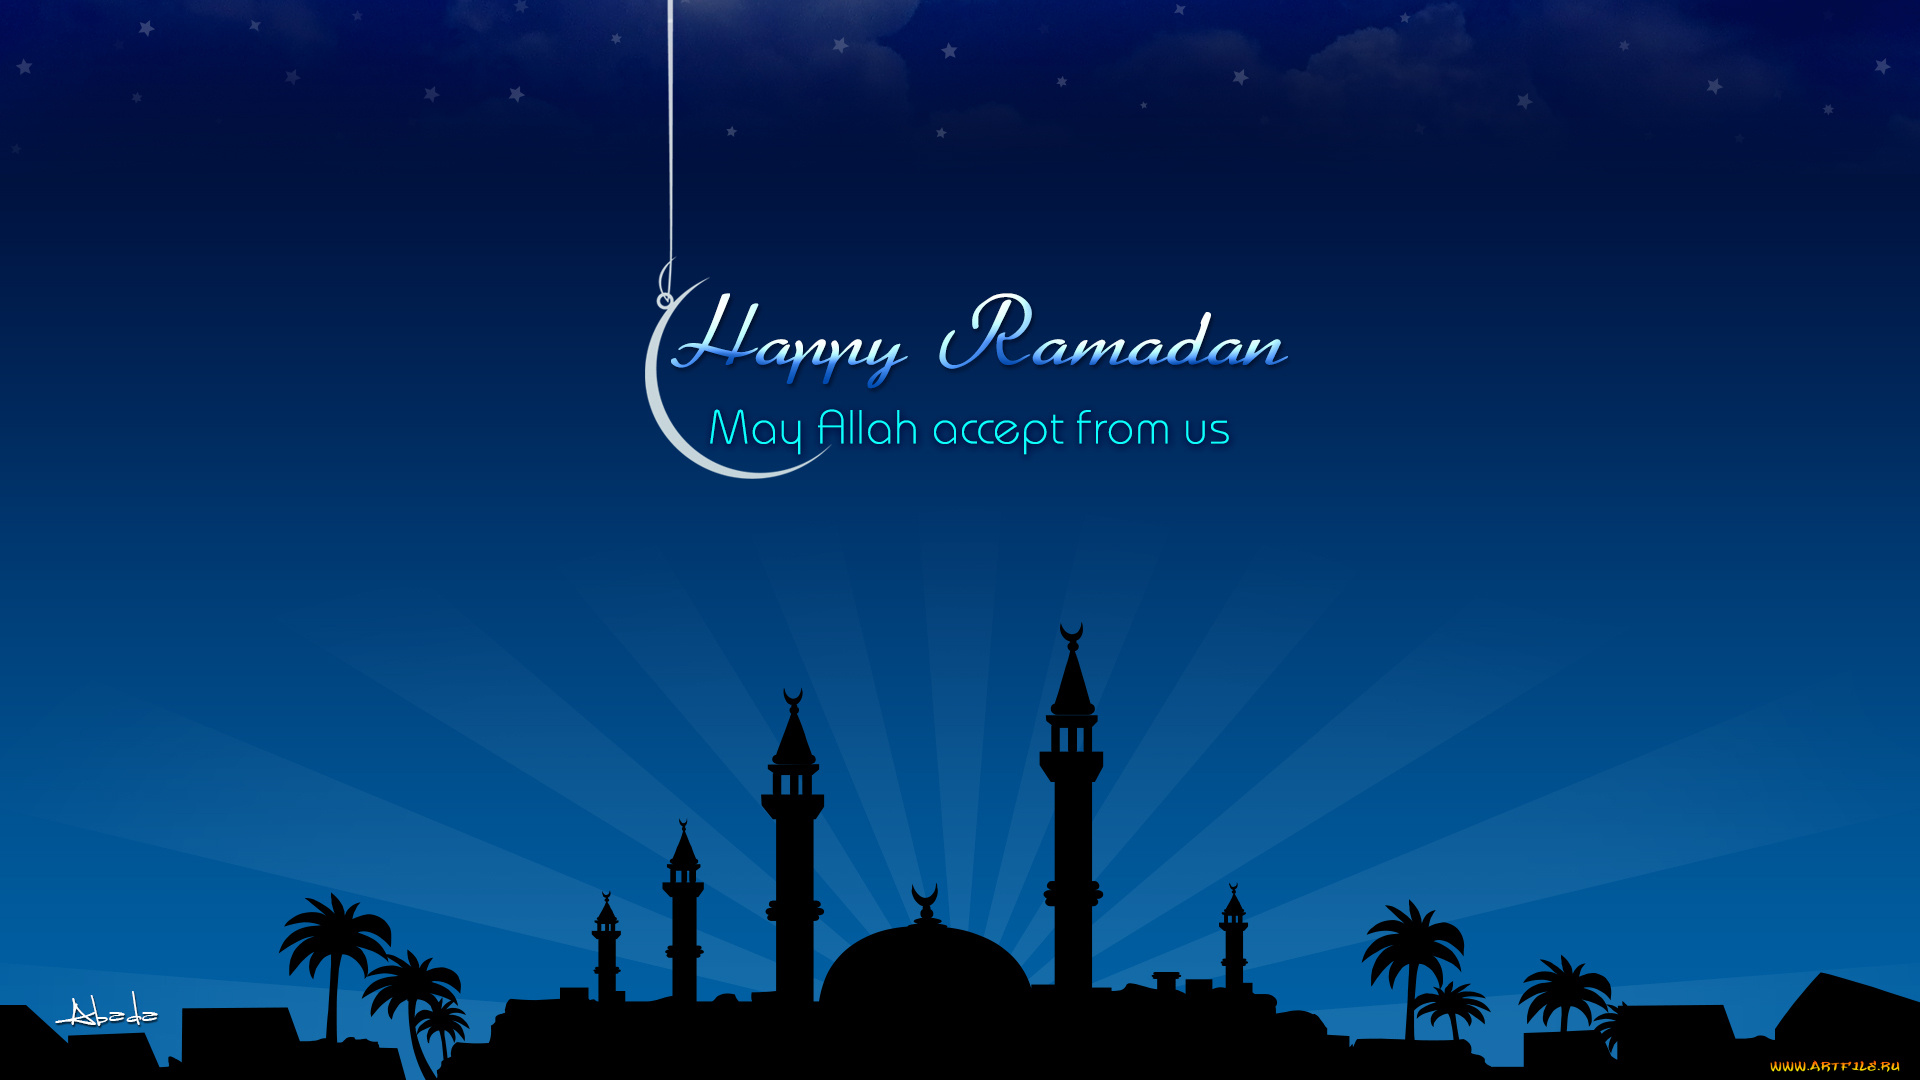 рамадан, праздничные, другое, мечеть, месяц, пожелание